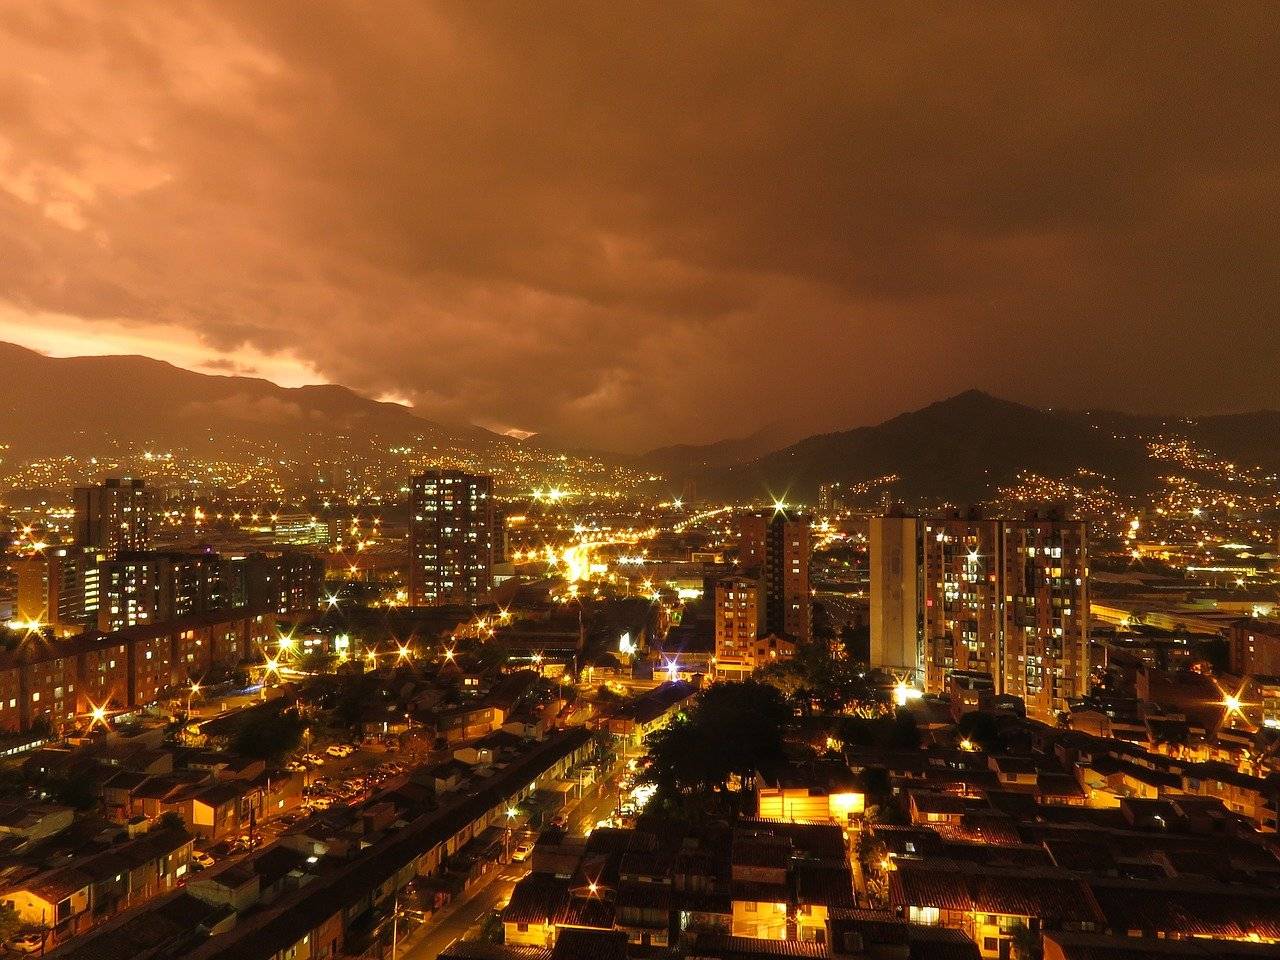 Evalúa con éxito tus opciones de inversión finca raíz en Medellín 